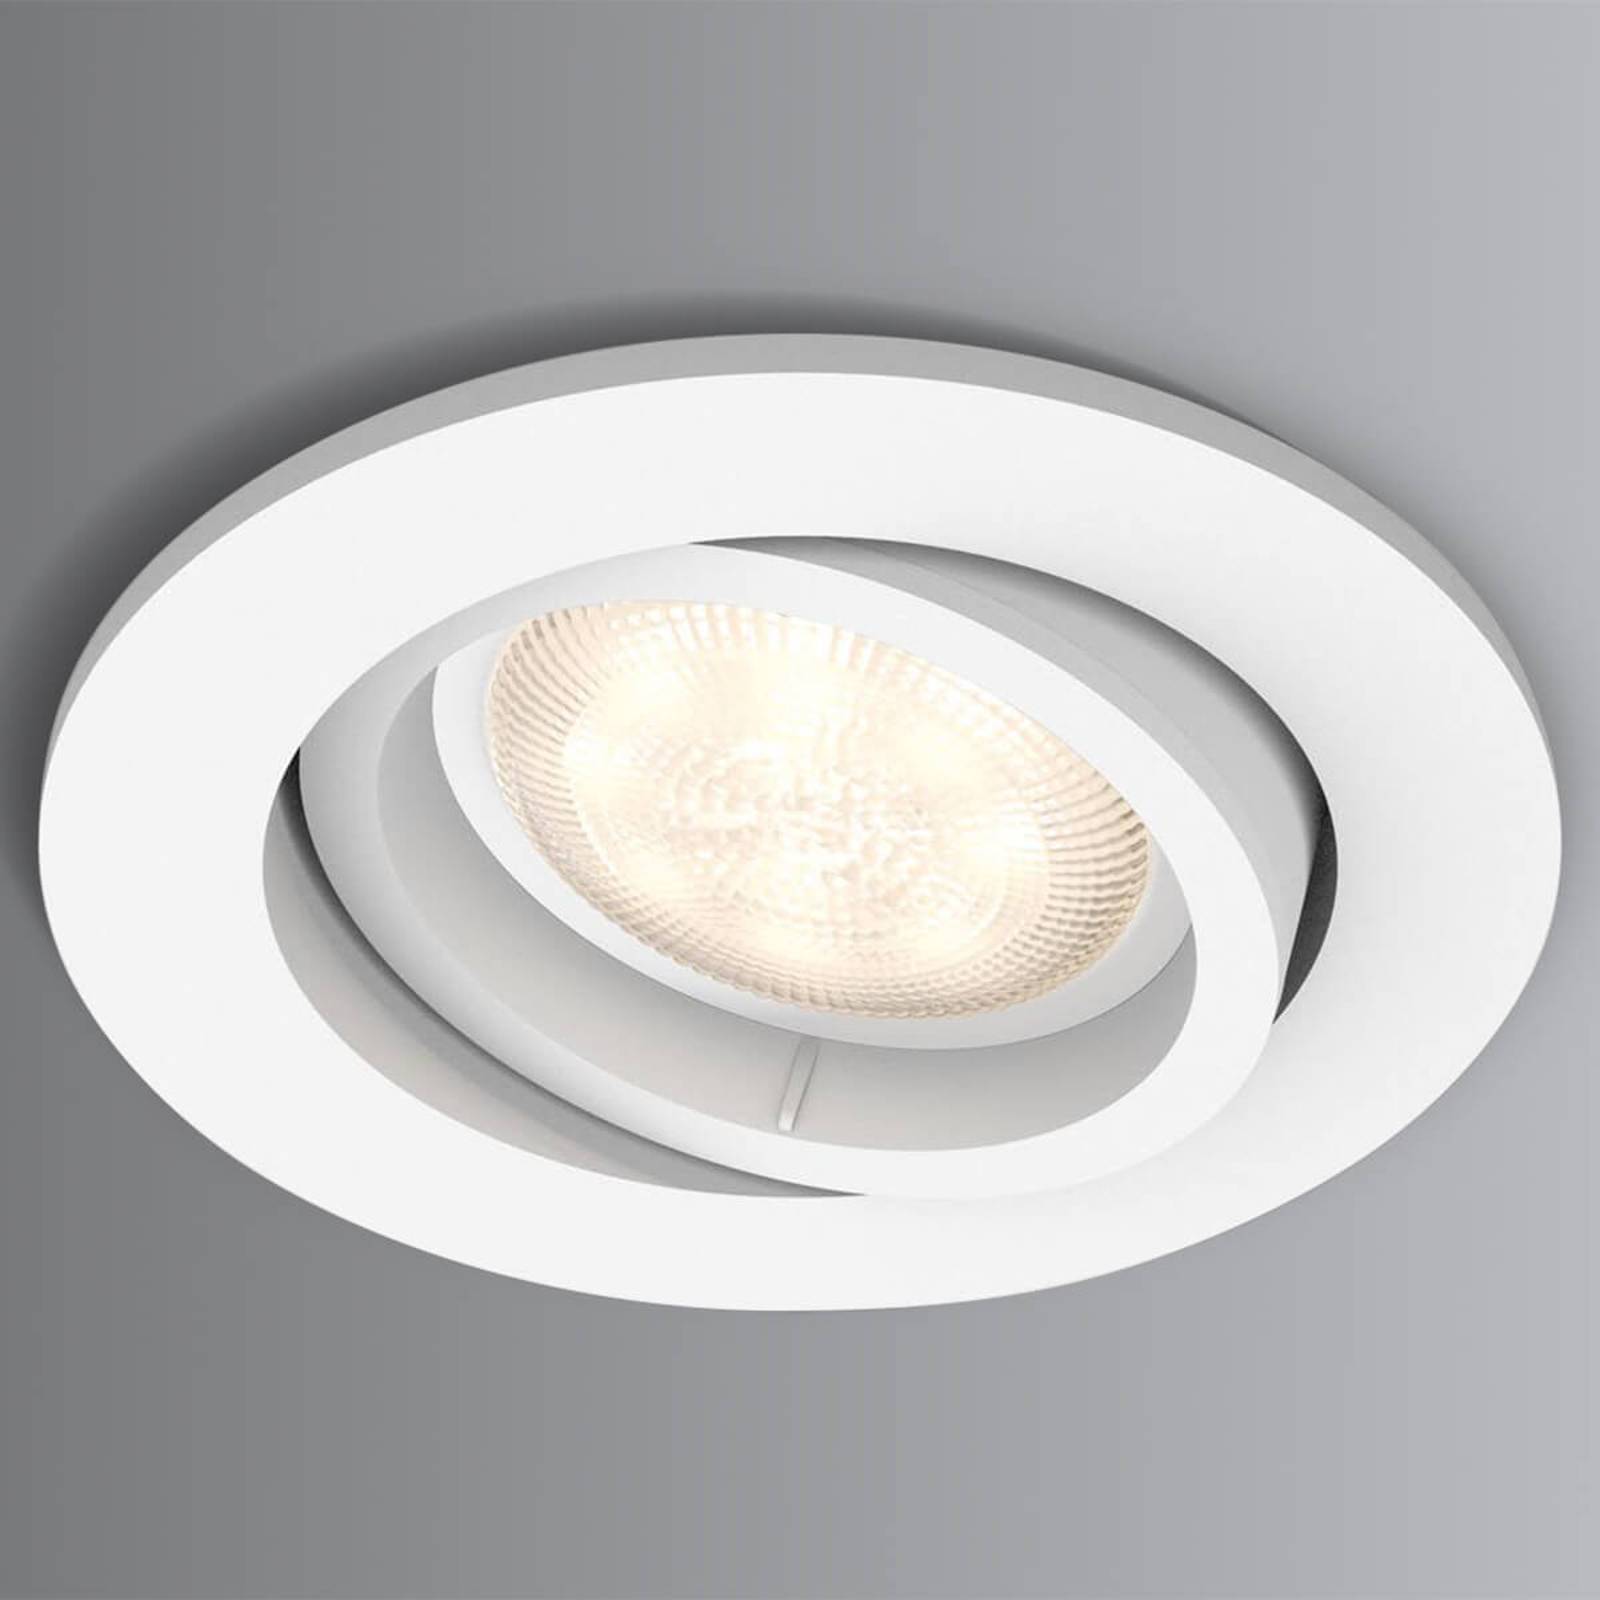 LED-uppospotti Shellbark valkoinen WarmGlow